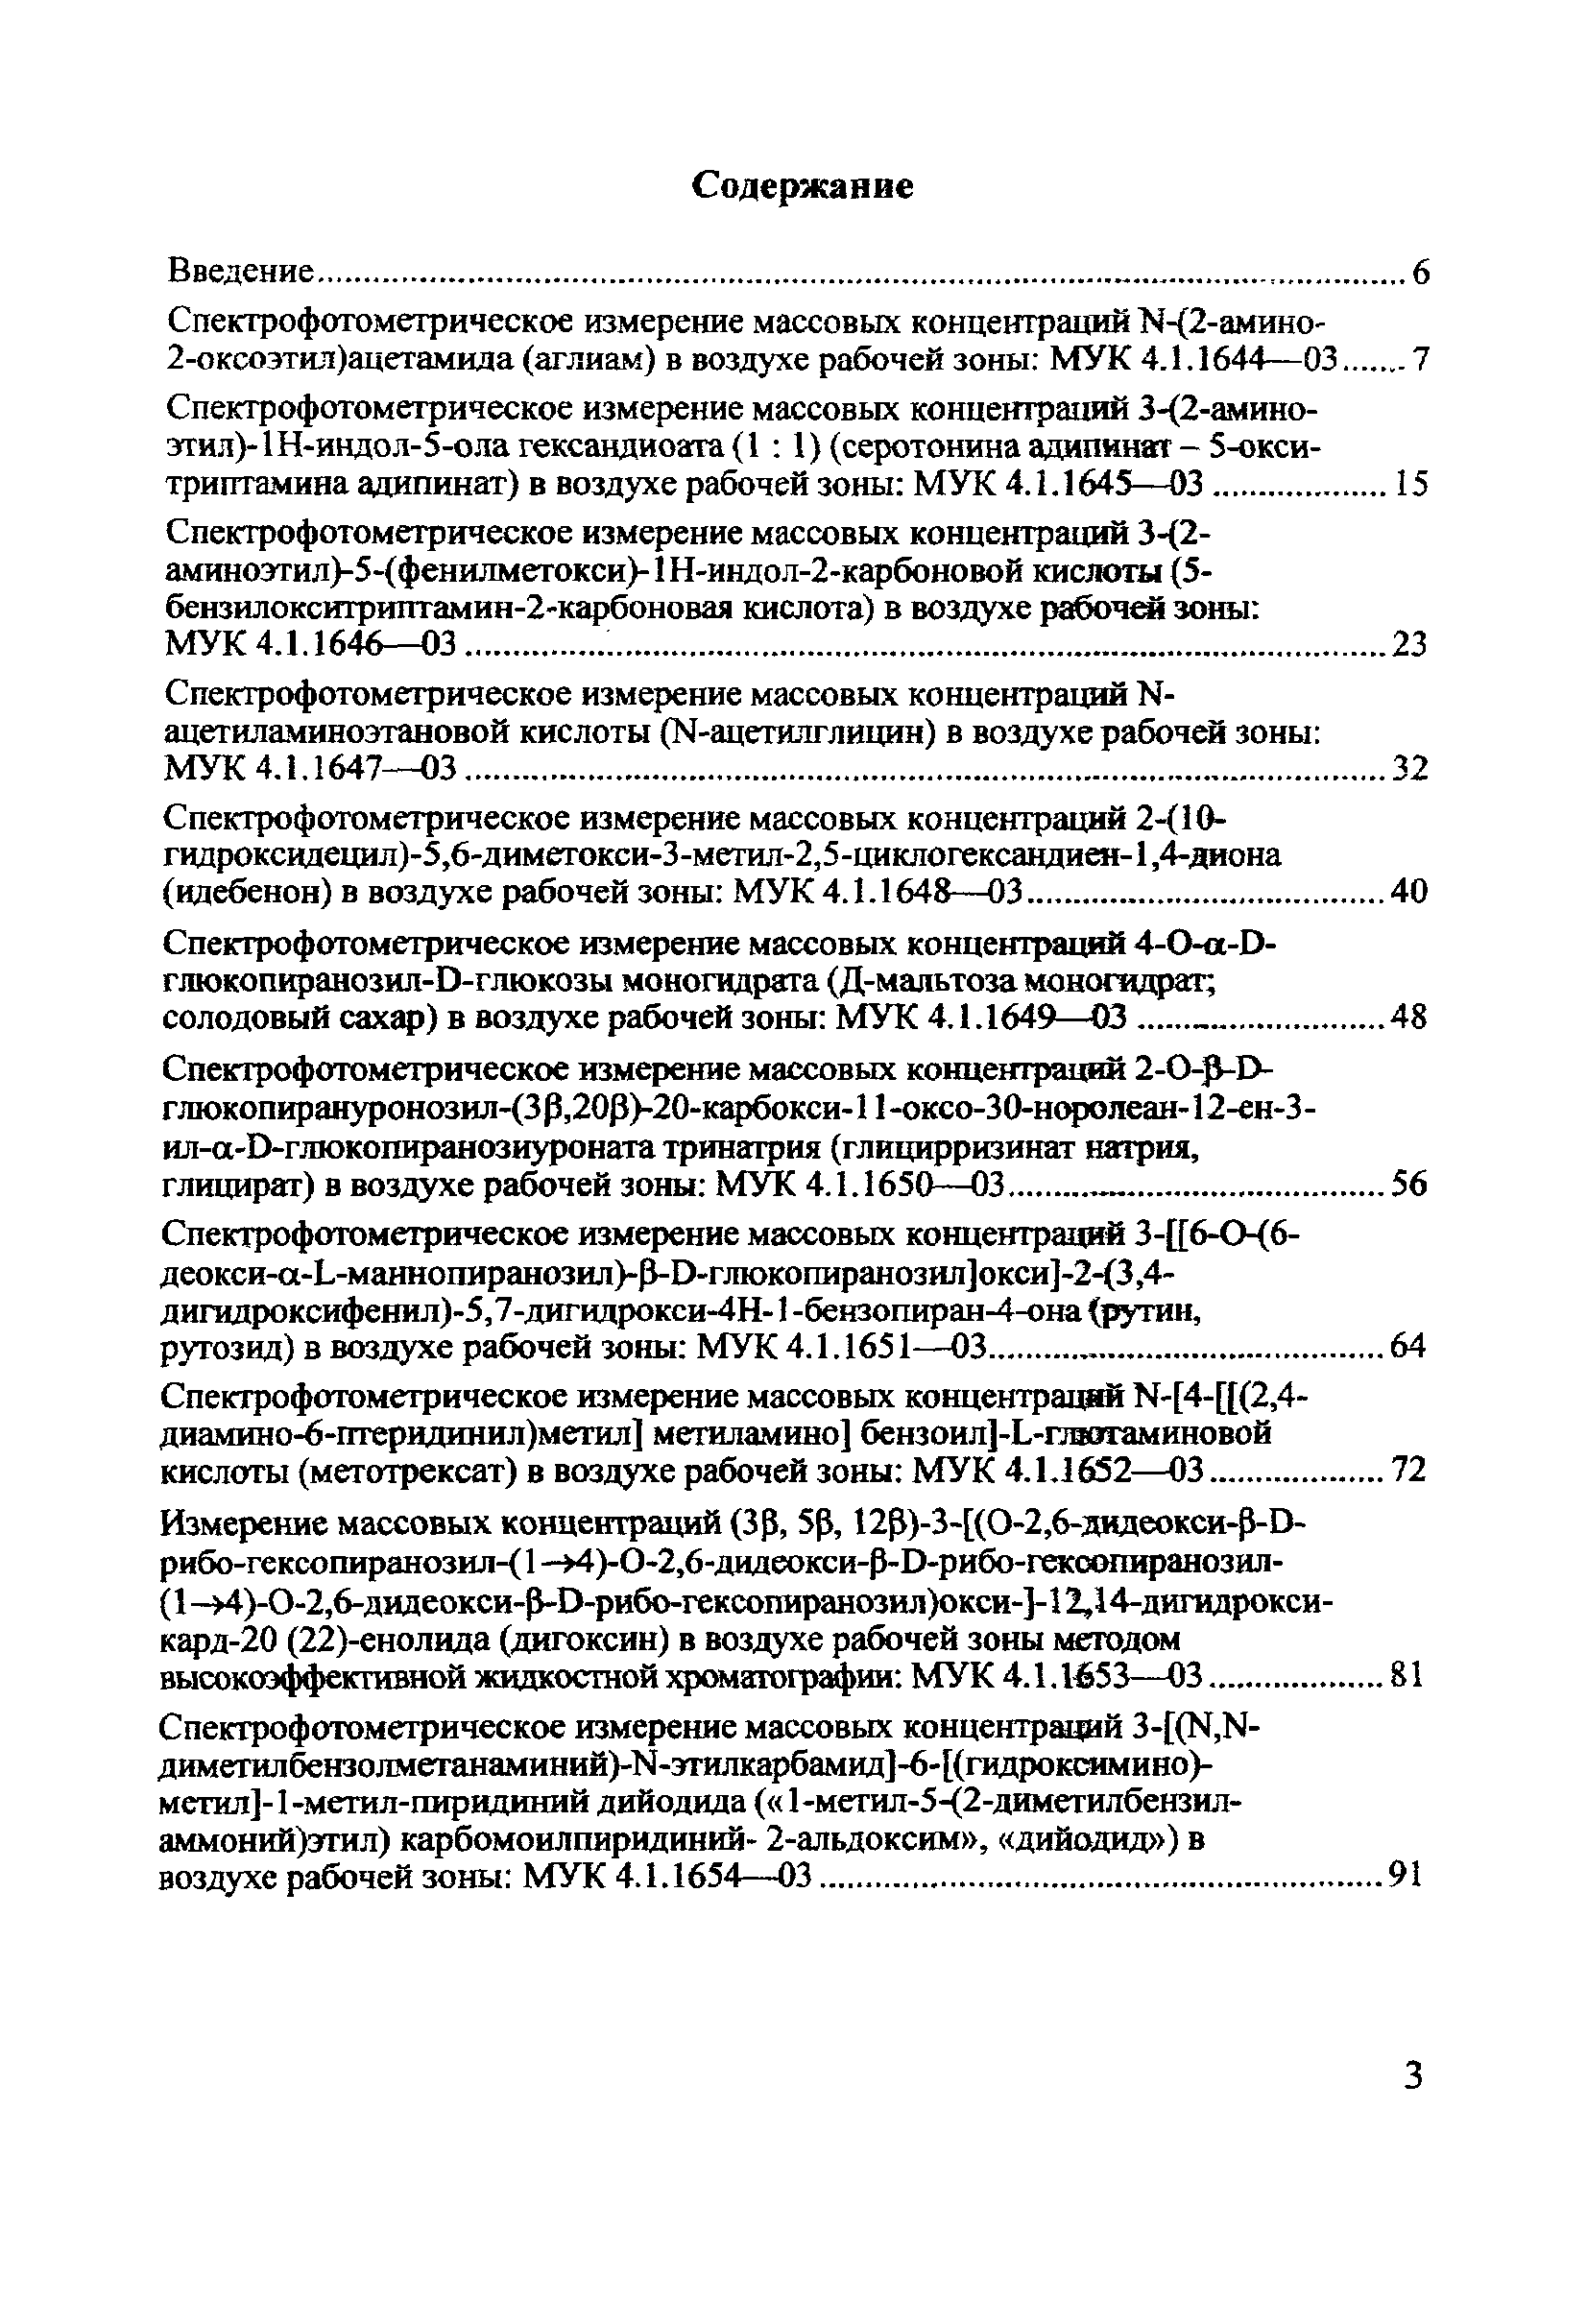 МУК 4.1.1652-03